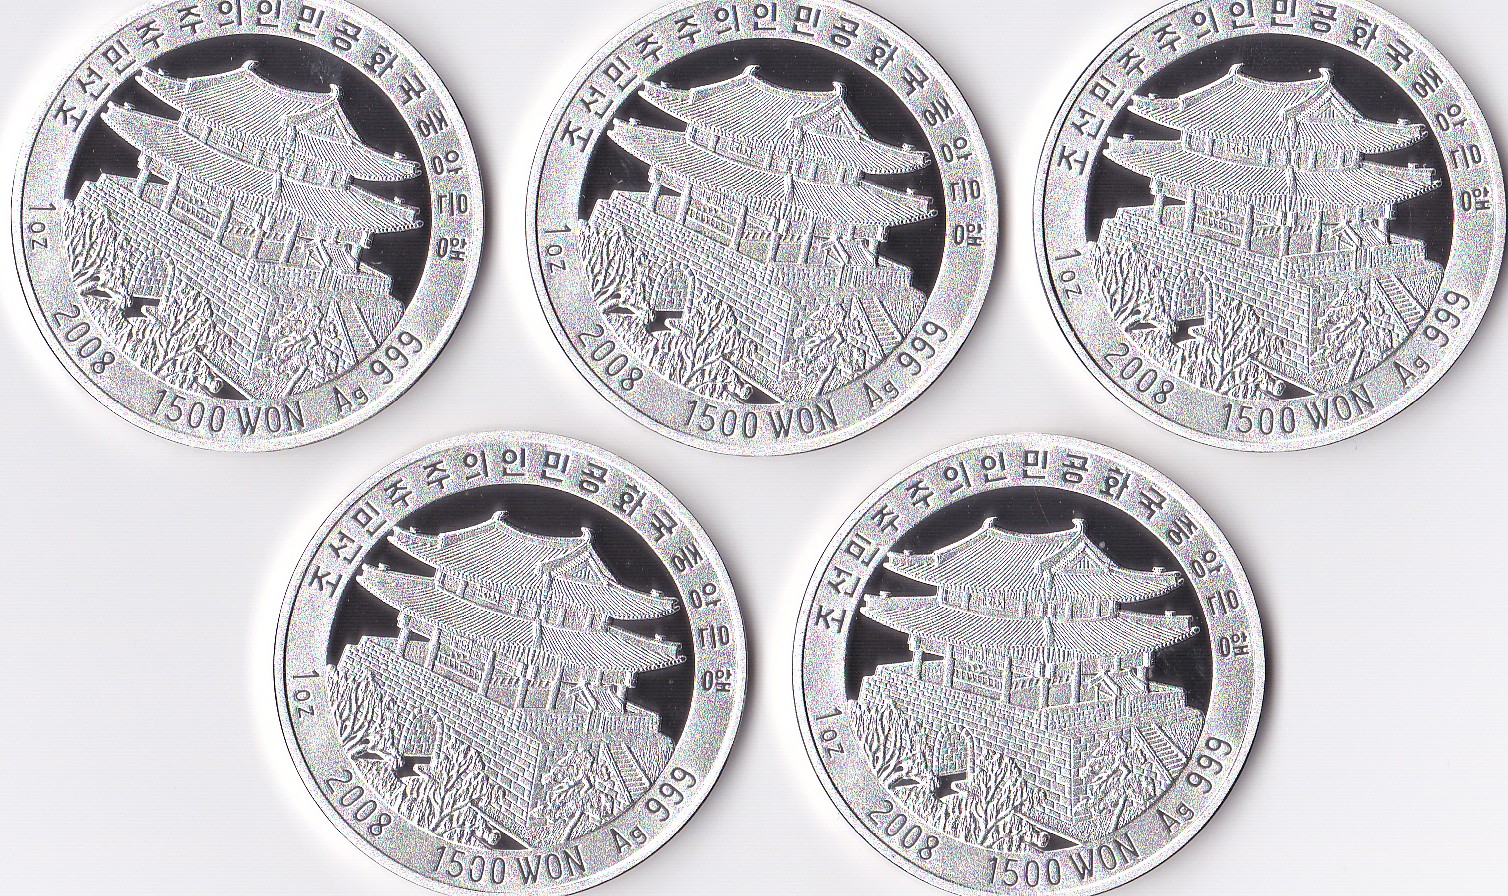 L3434, Korea Children Play 5 Pcs Commemorative Silver Coins, 1 Ounce, 2008